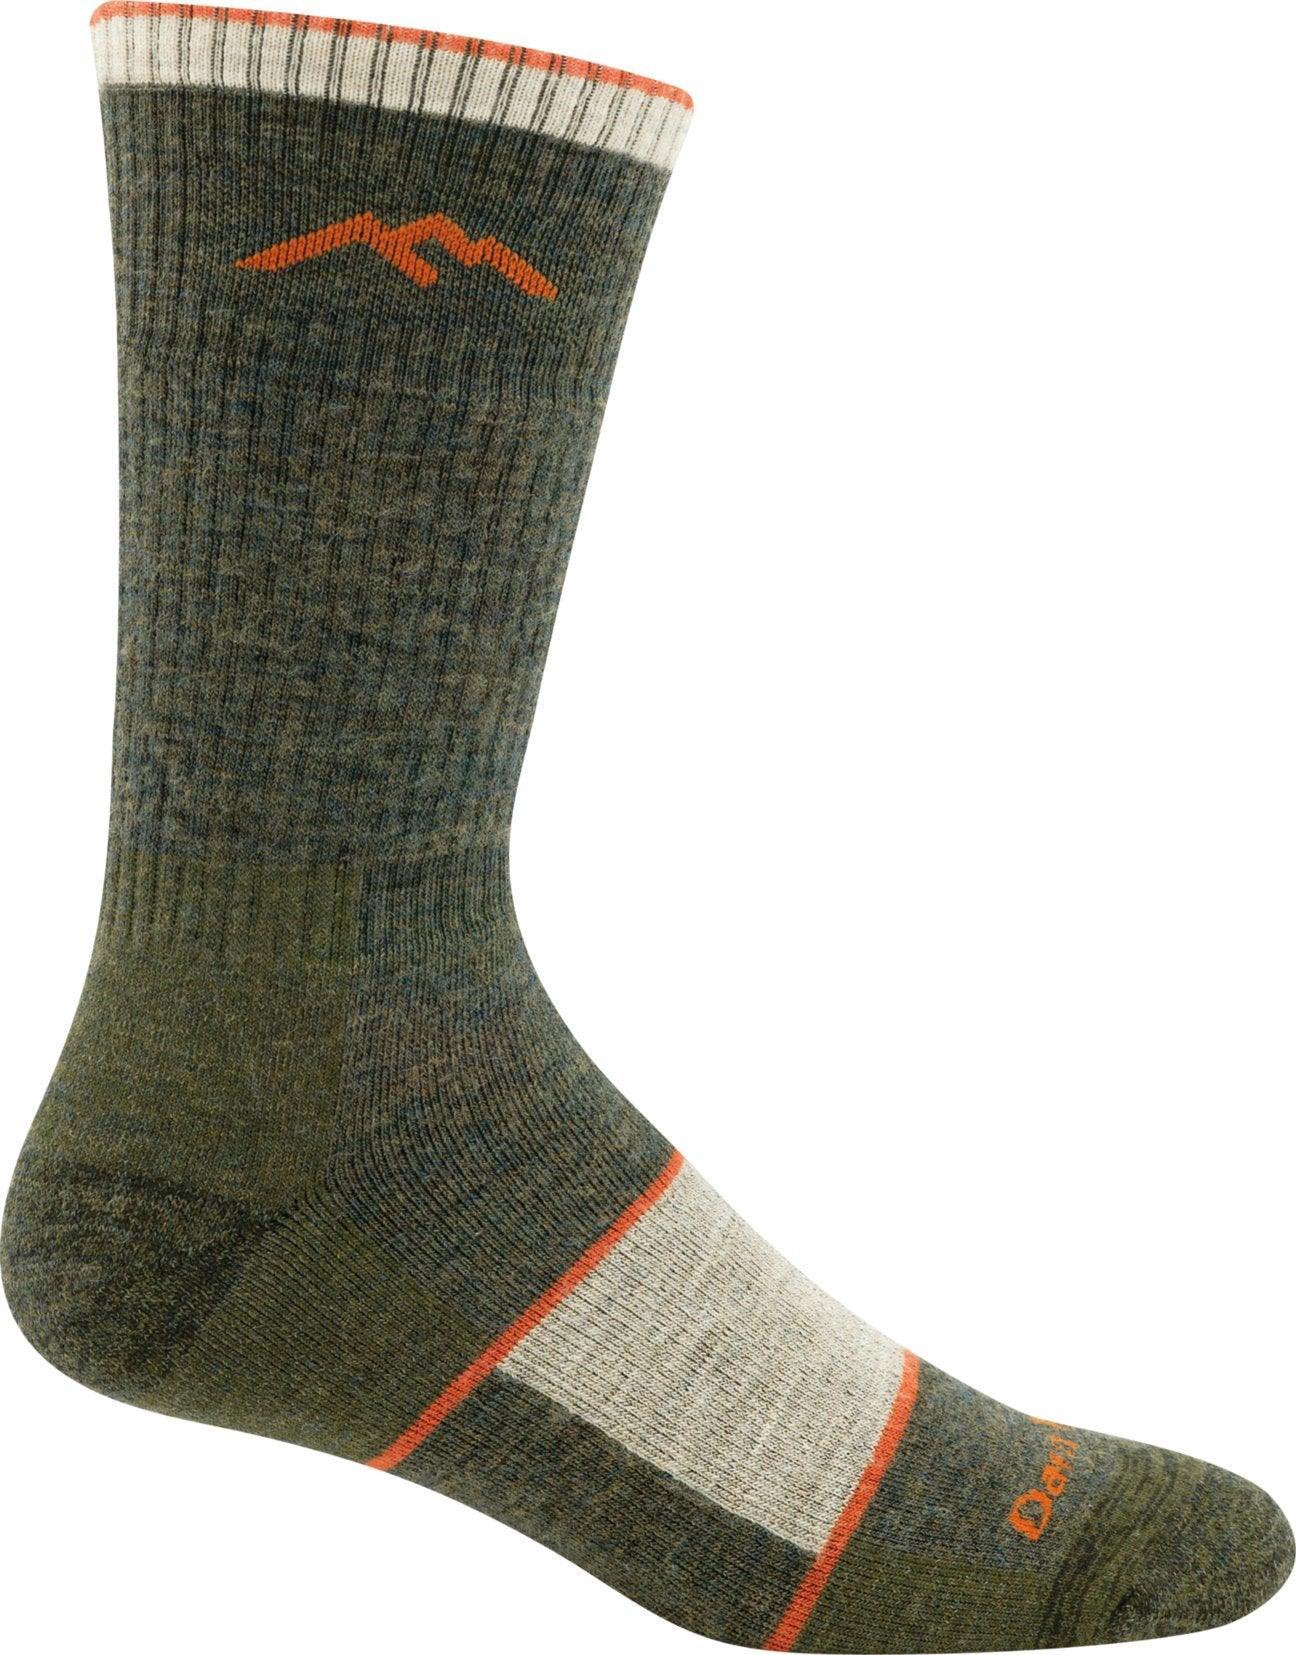 Hiker, Men's Boot Sock Full Cushion #1405 - Darn Tough - The Sock Monster